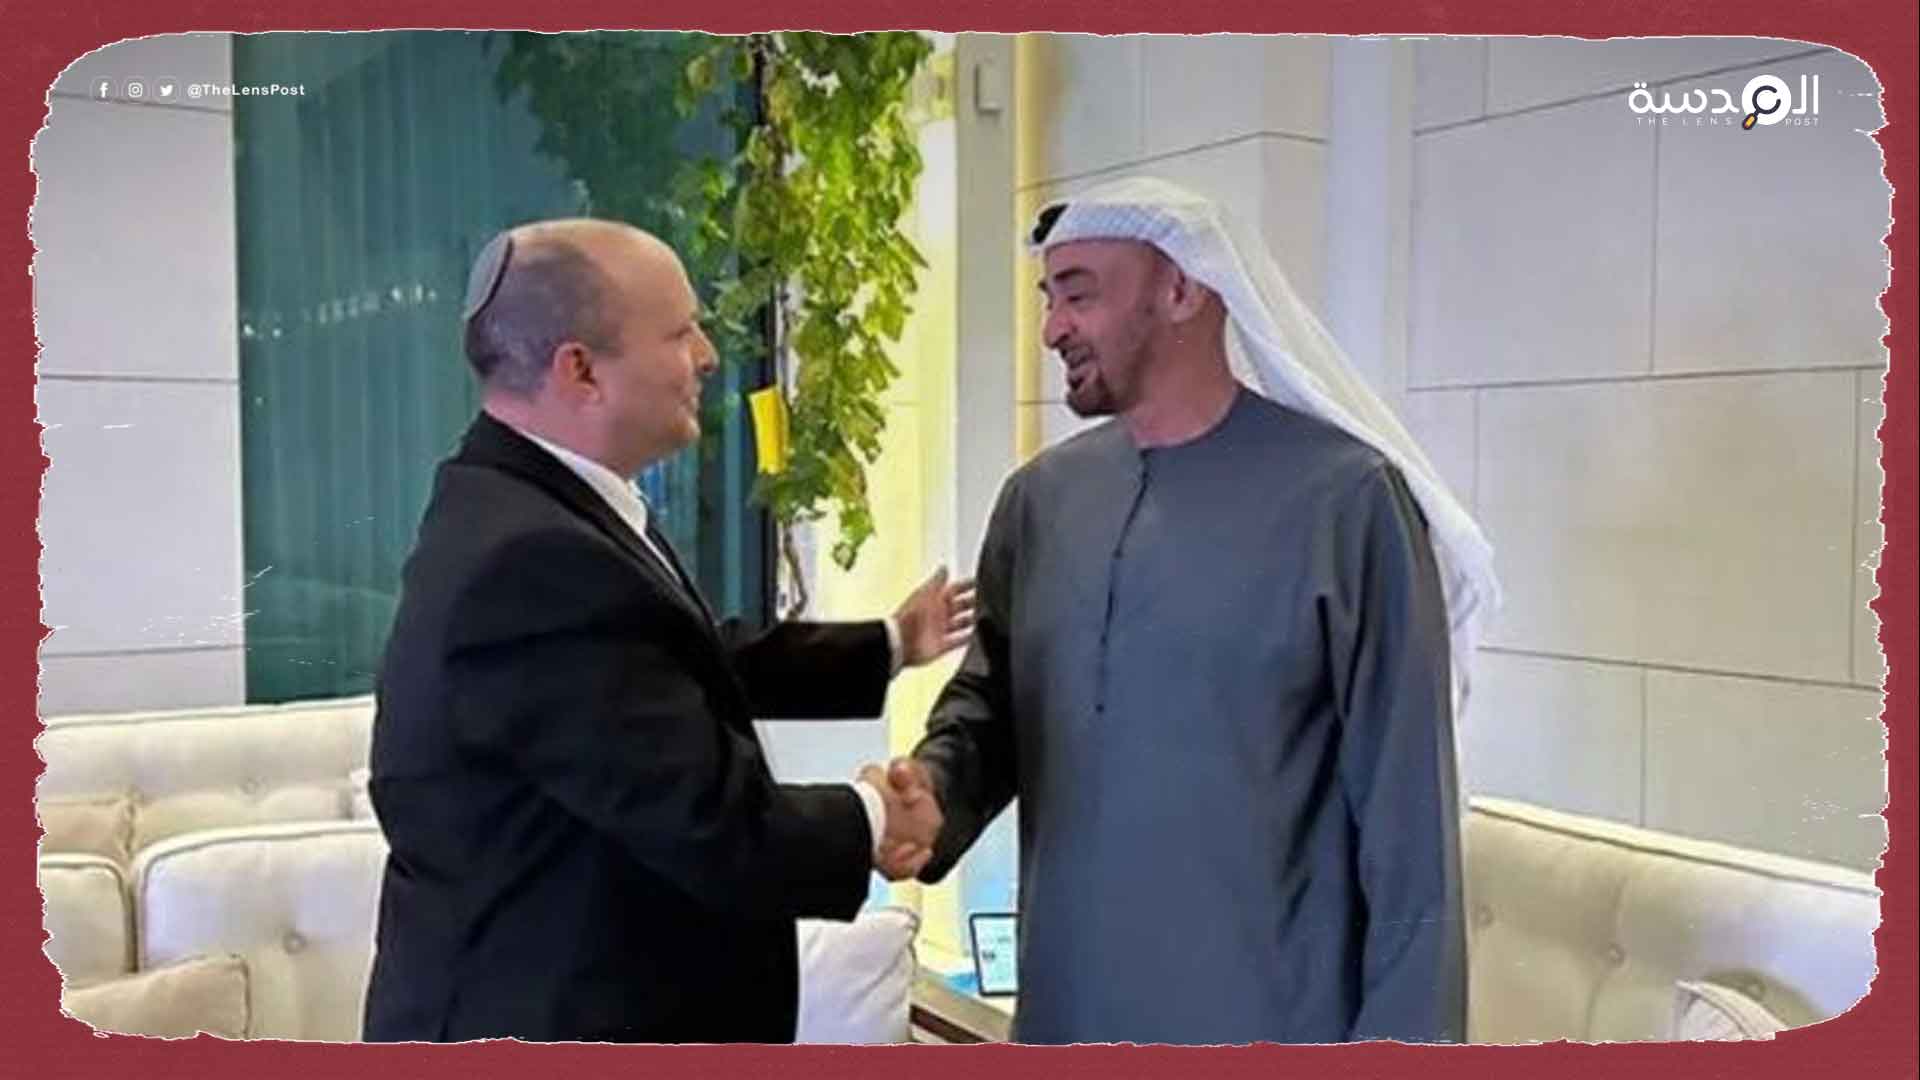 بن زايد يلتقي مع نفتالي بينيت رئيس الوزراء الإسرائيلي السابق في الإمارات